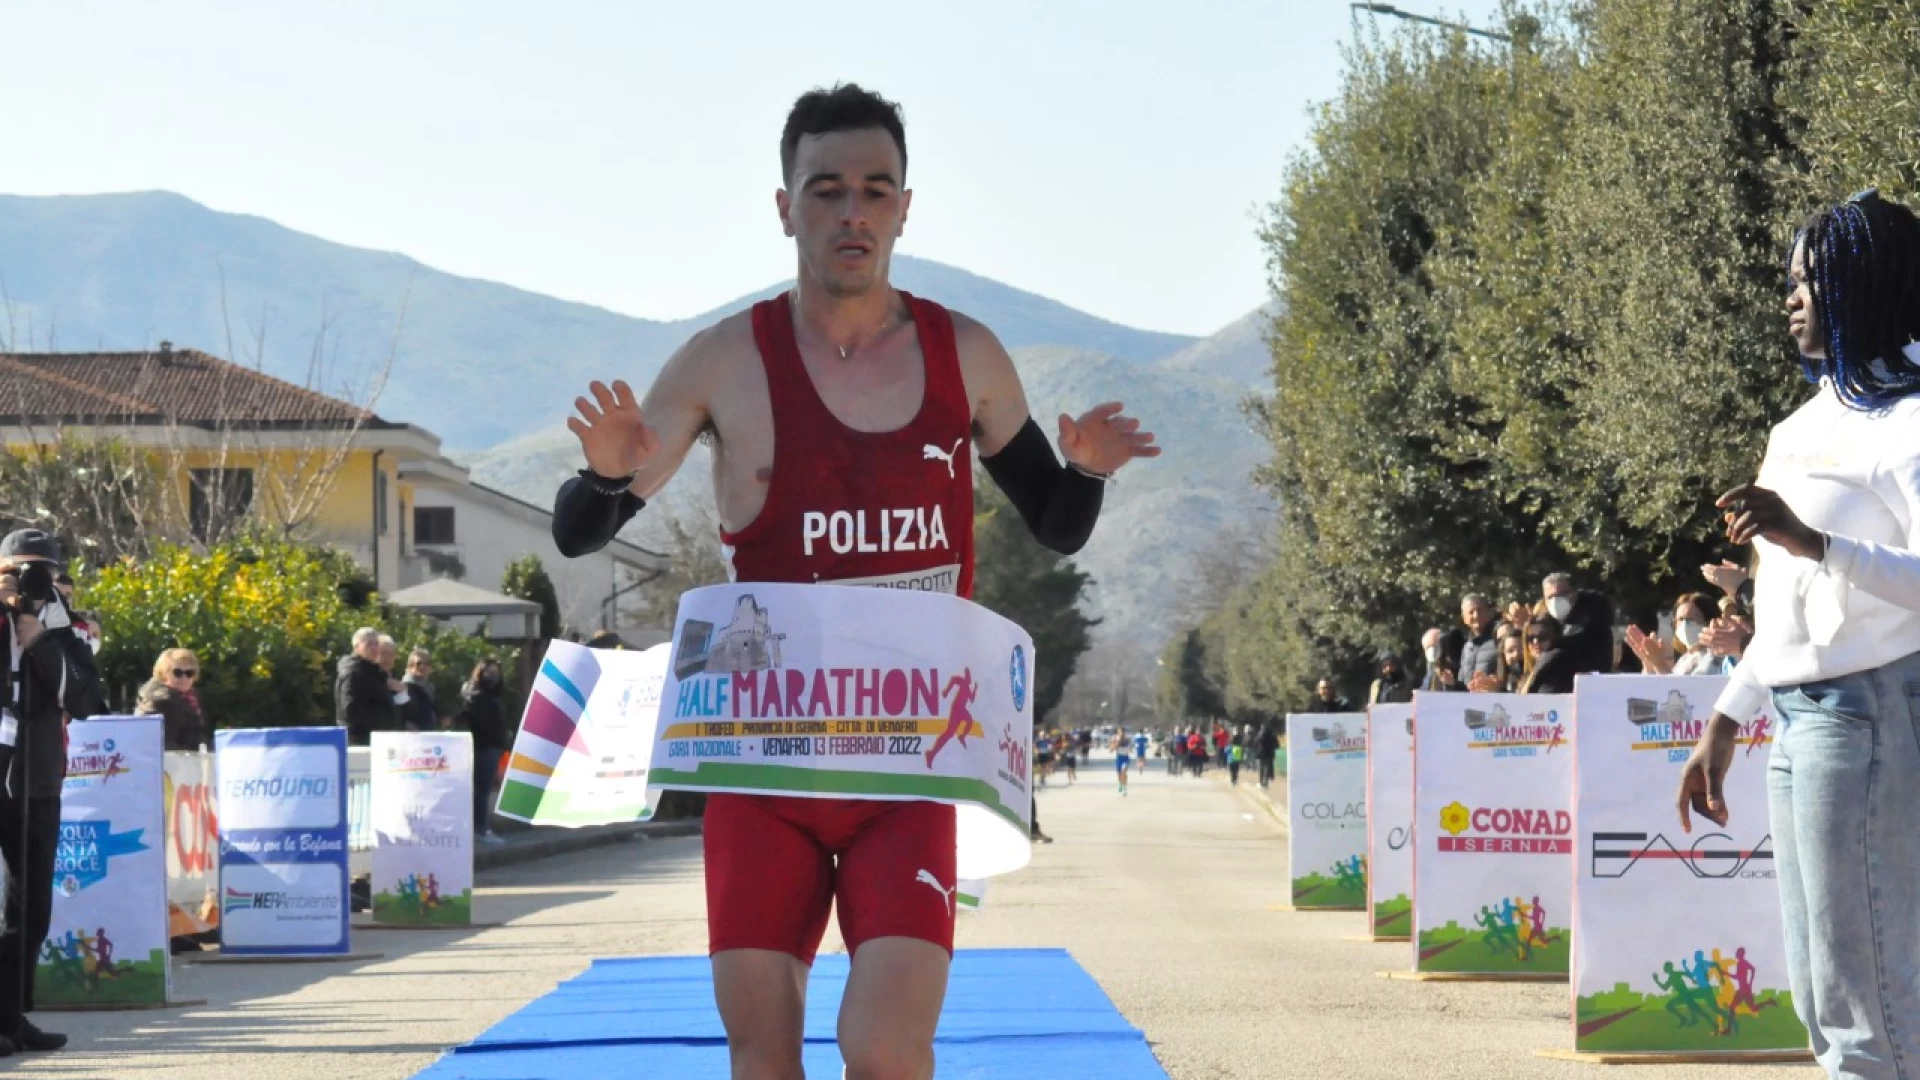 Half Marathon “Provincia di Isernia-Città di Venafro” trionfa Daniele D’Onofrio delle Fiamme Oro.